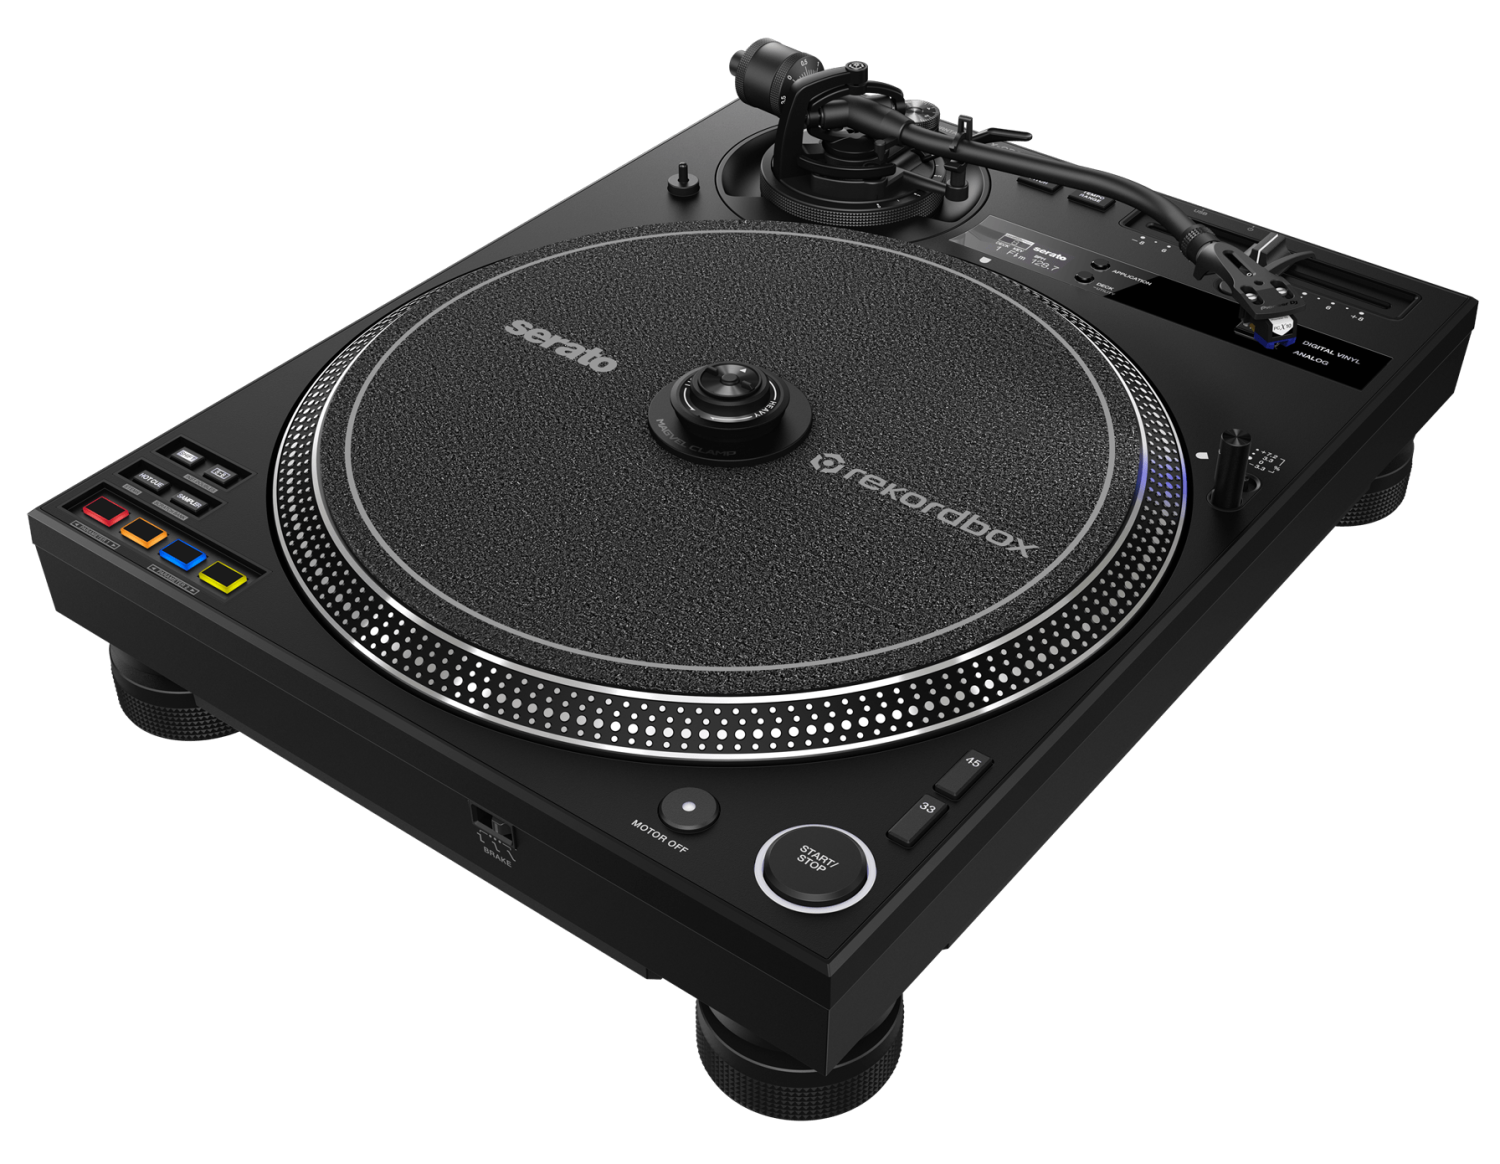 Pioneer DJ PLX-CRSS12 - Platine vinyle professionnelle à entraînement  direct avec contrôle DVS